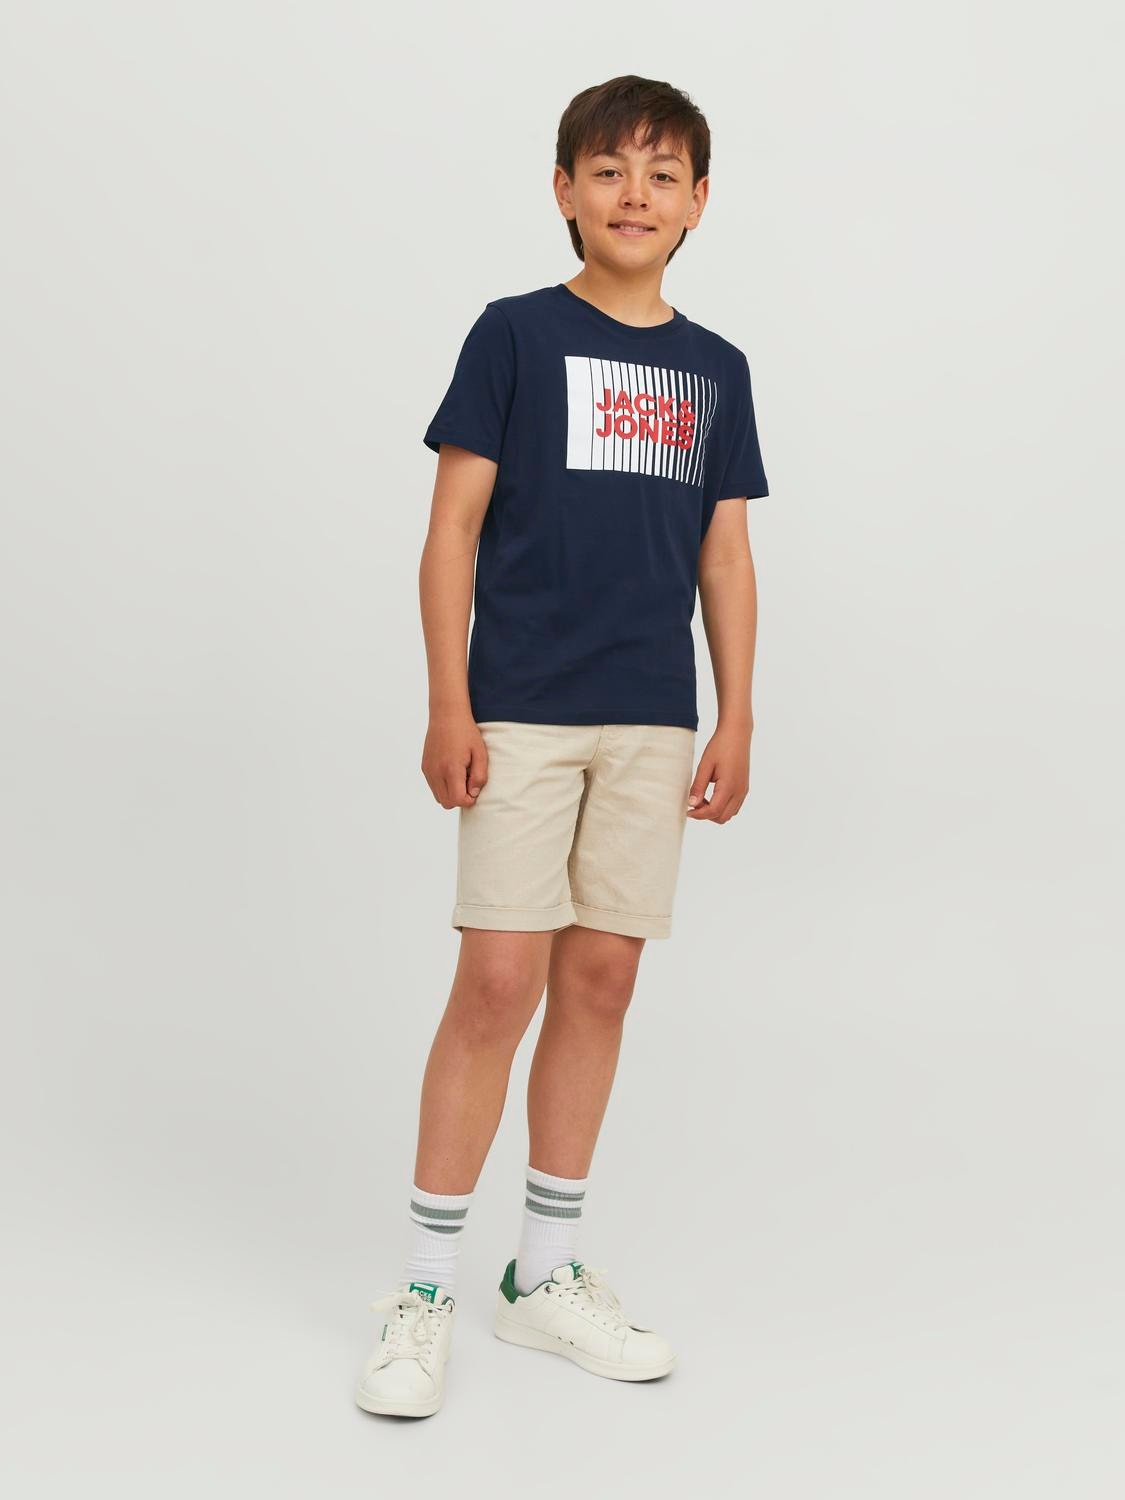 Jack & Jones T-shirt Imprimé Mini -Navy Blazer - 12257365